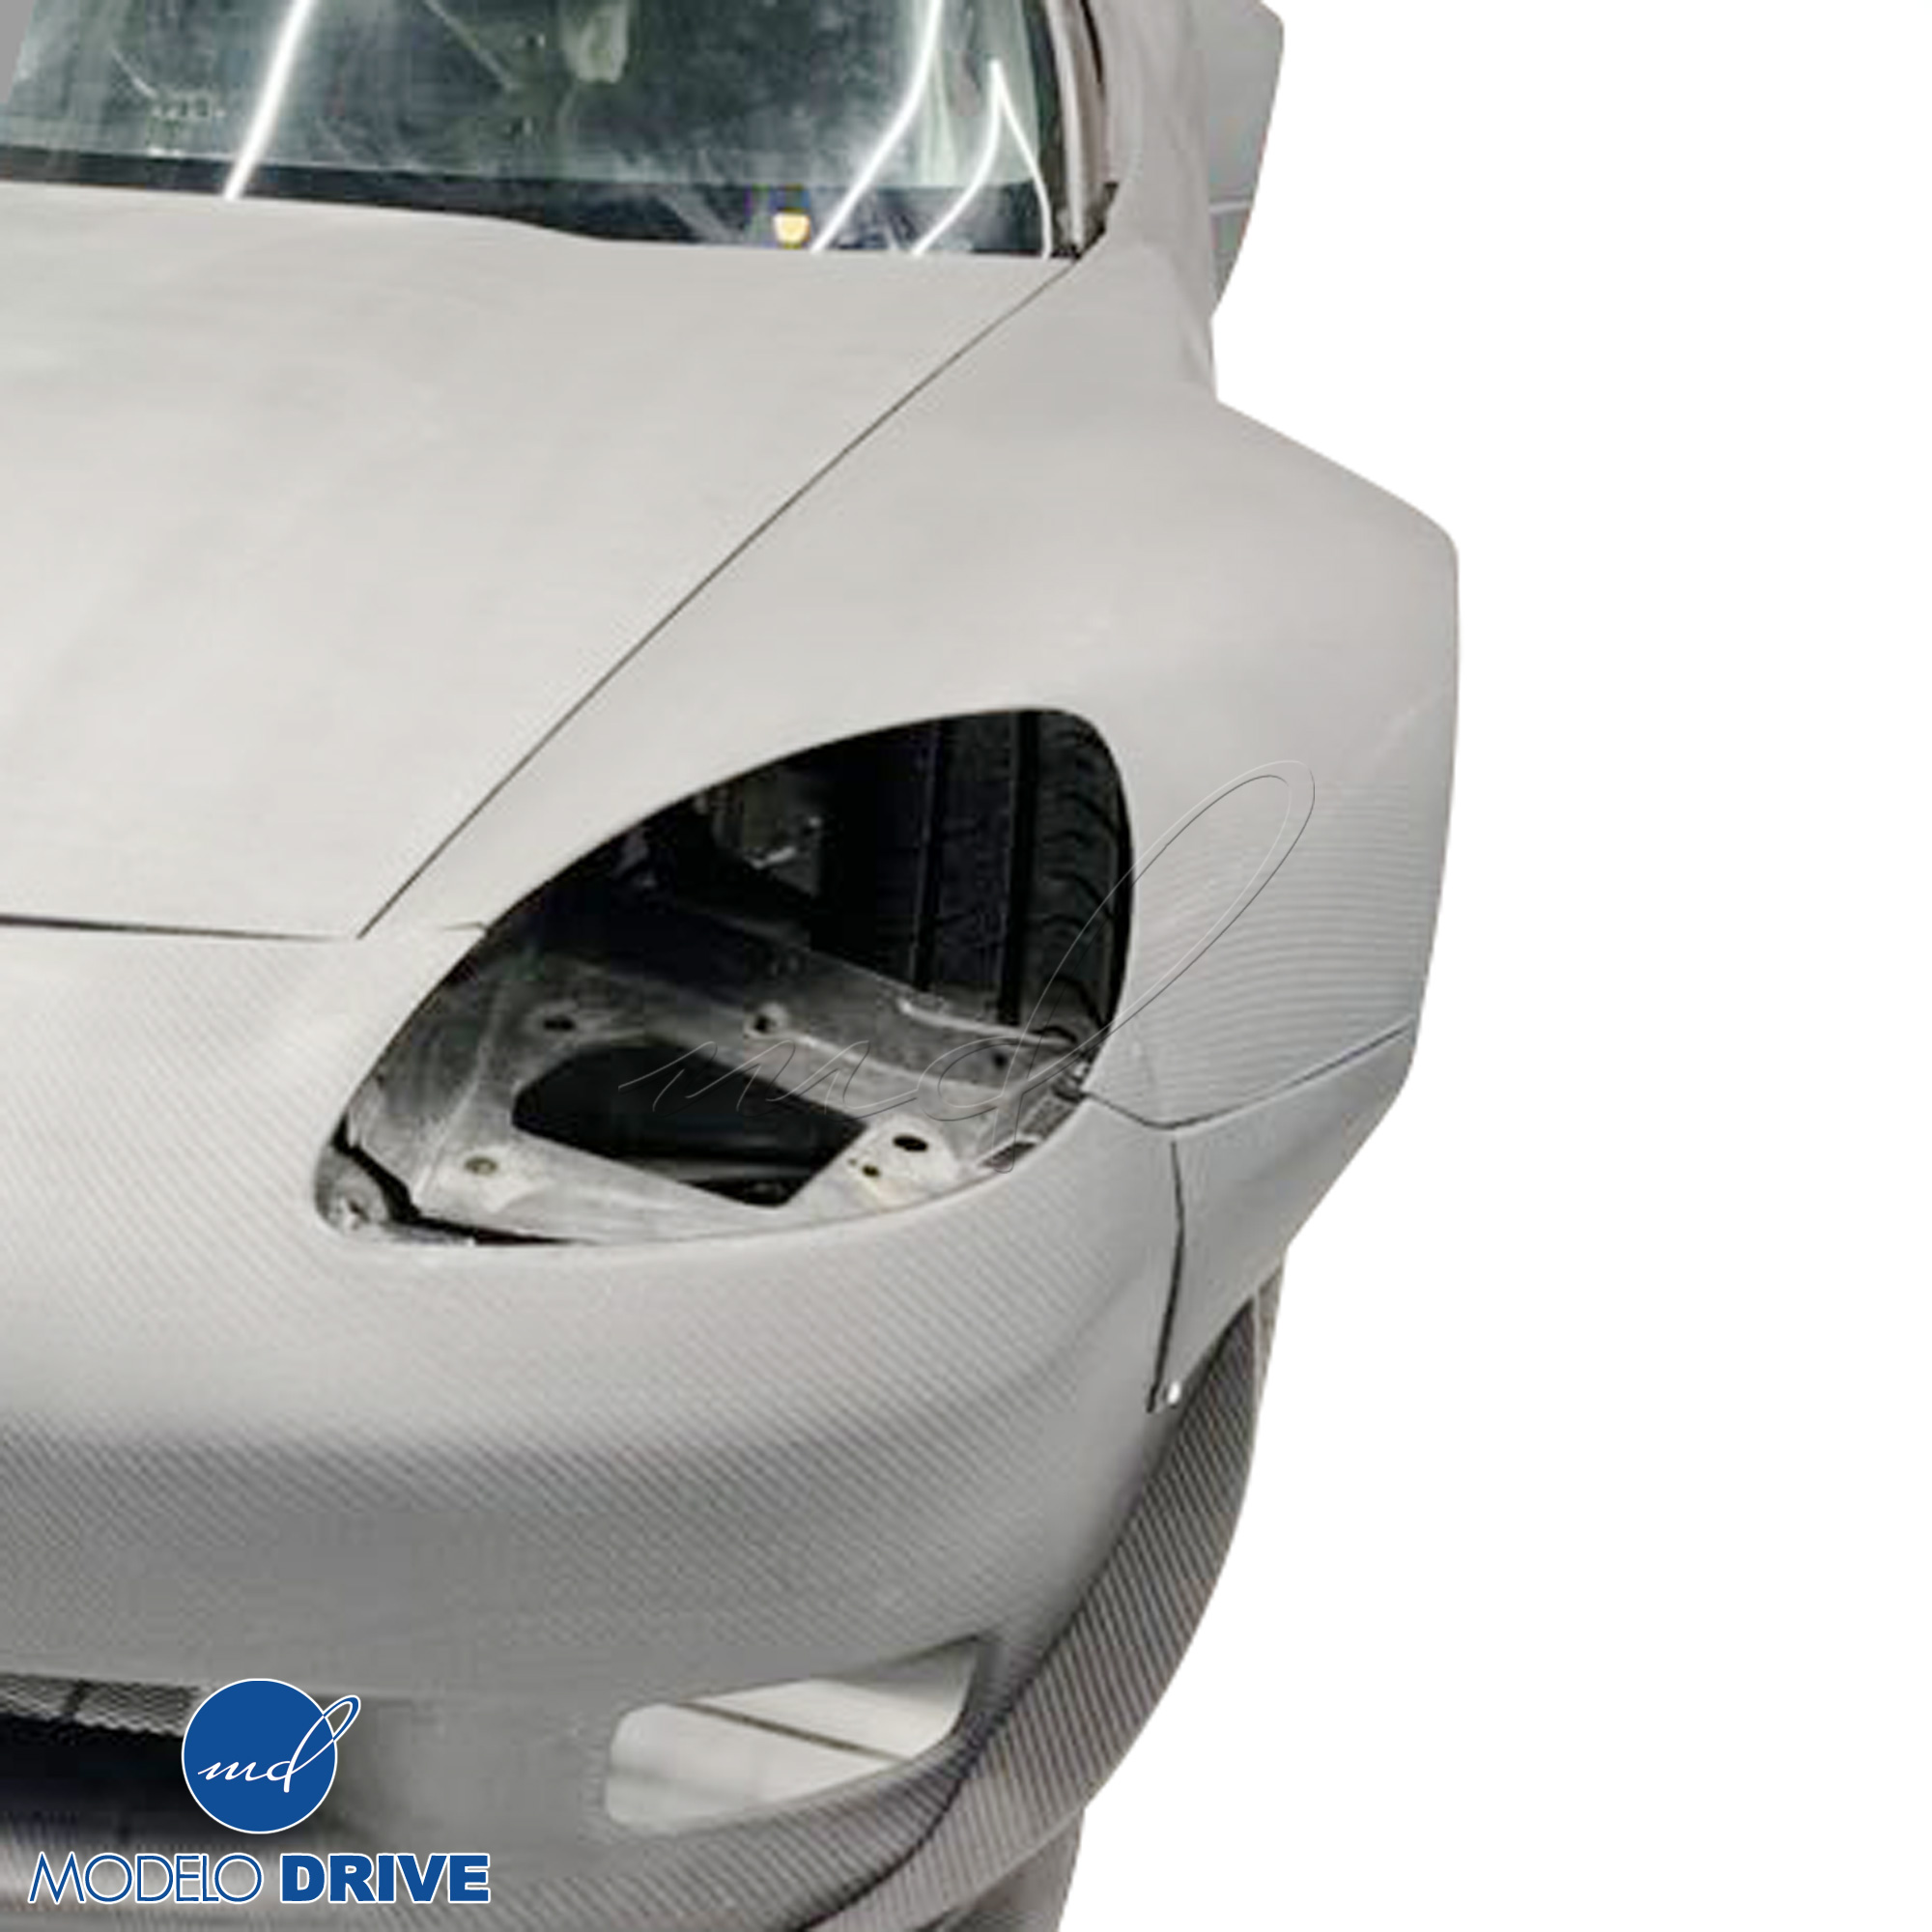 ModeloDrive Carbon Fiber GT3-XL Wide Body Fenders (front) 4pc > Chevrolet Corvette C6 2005-2013 - Image 2